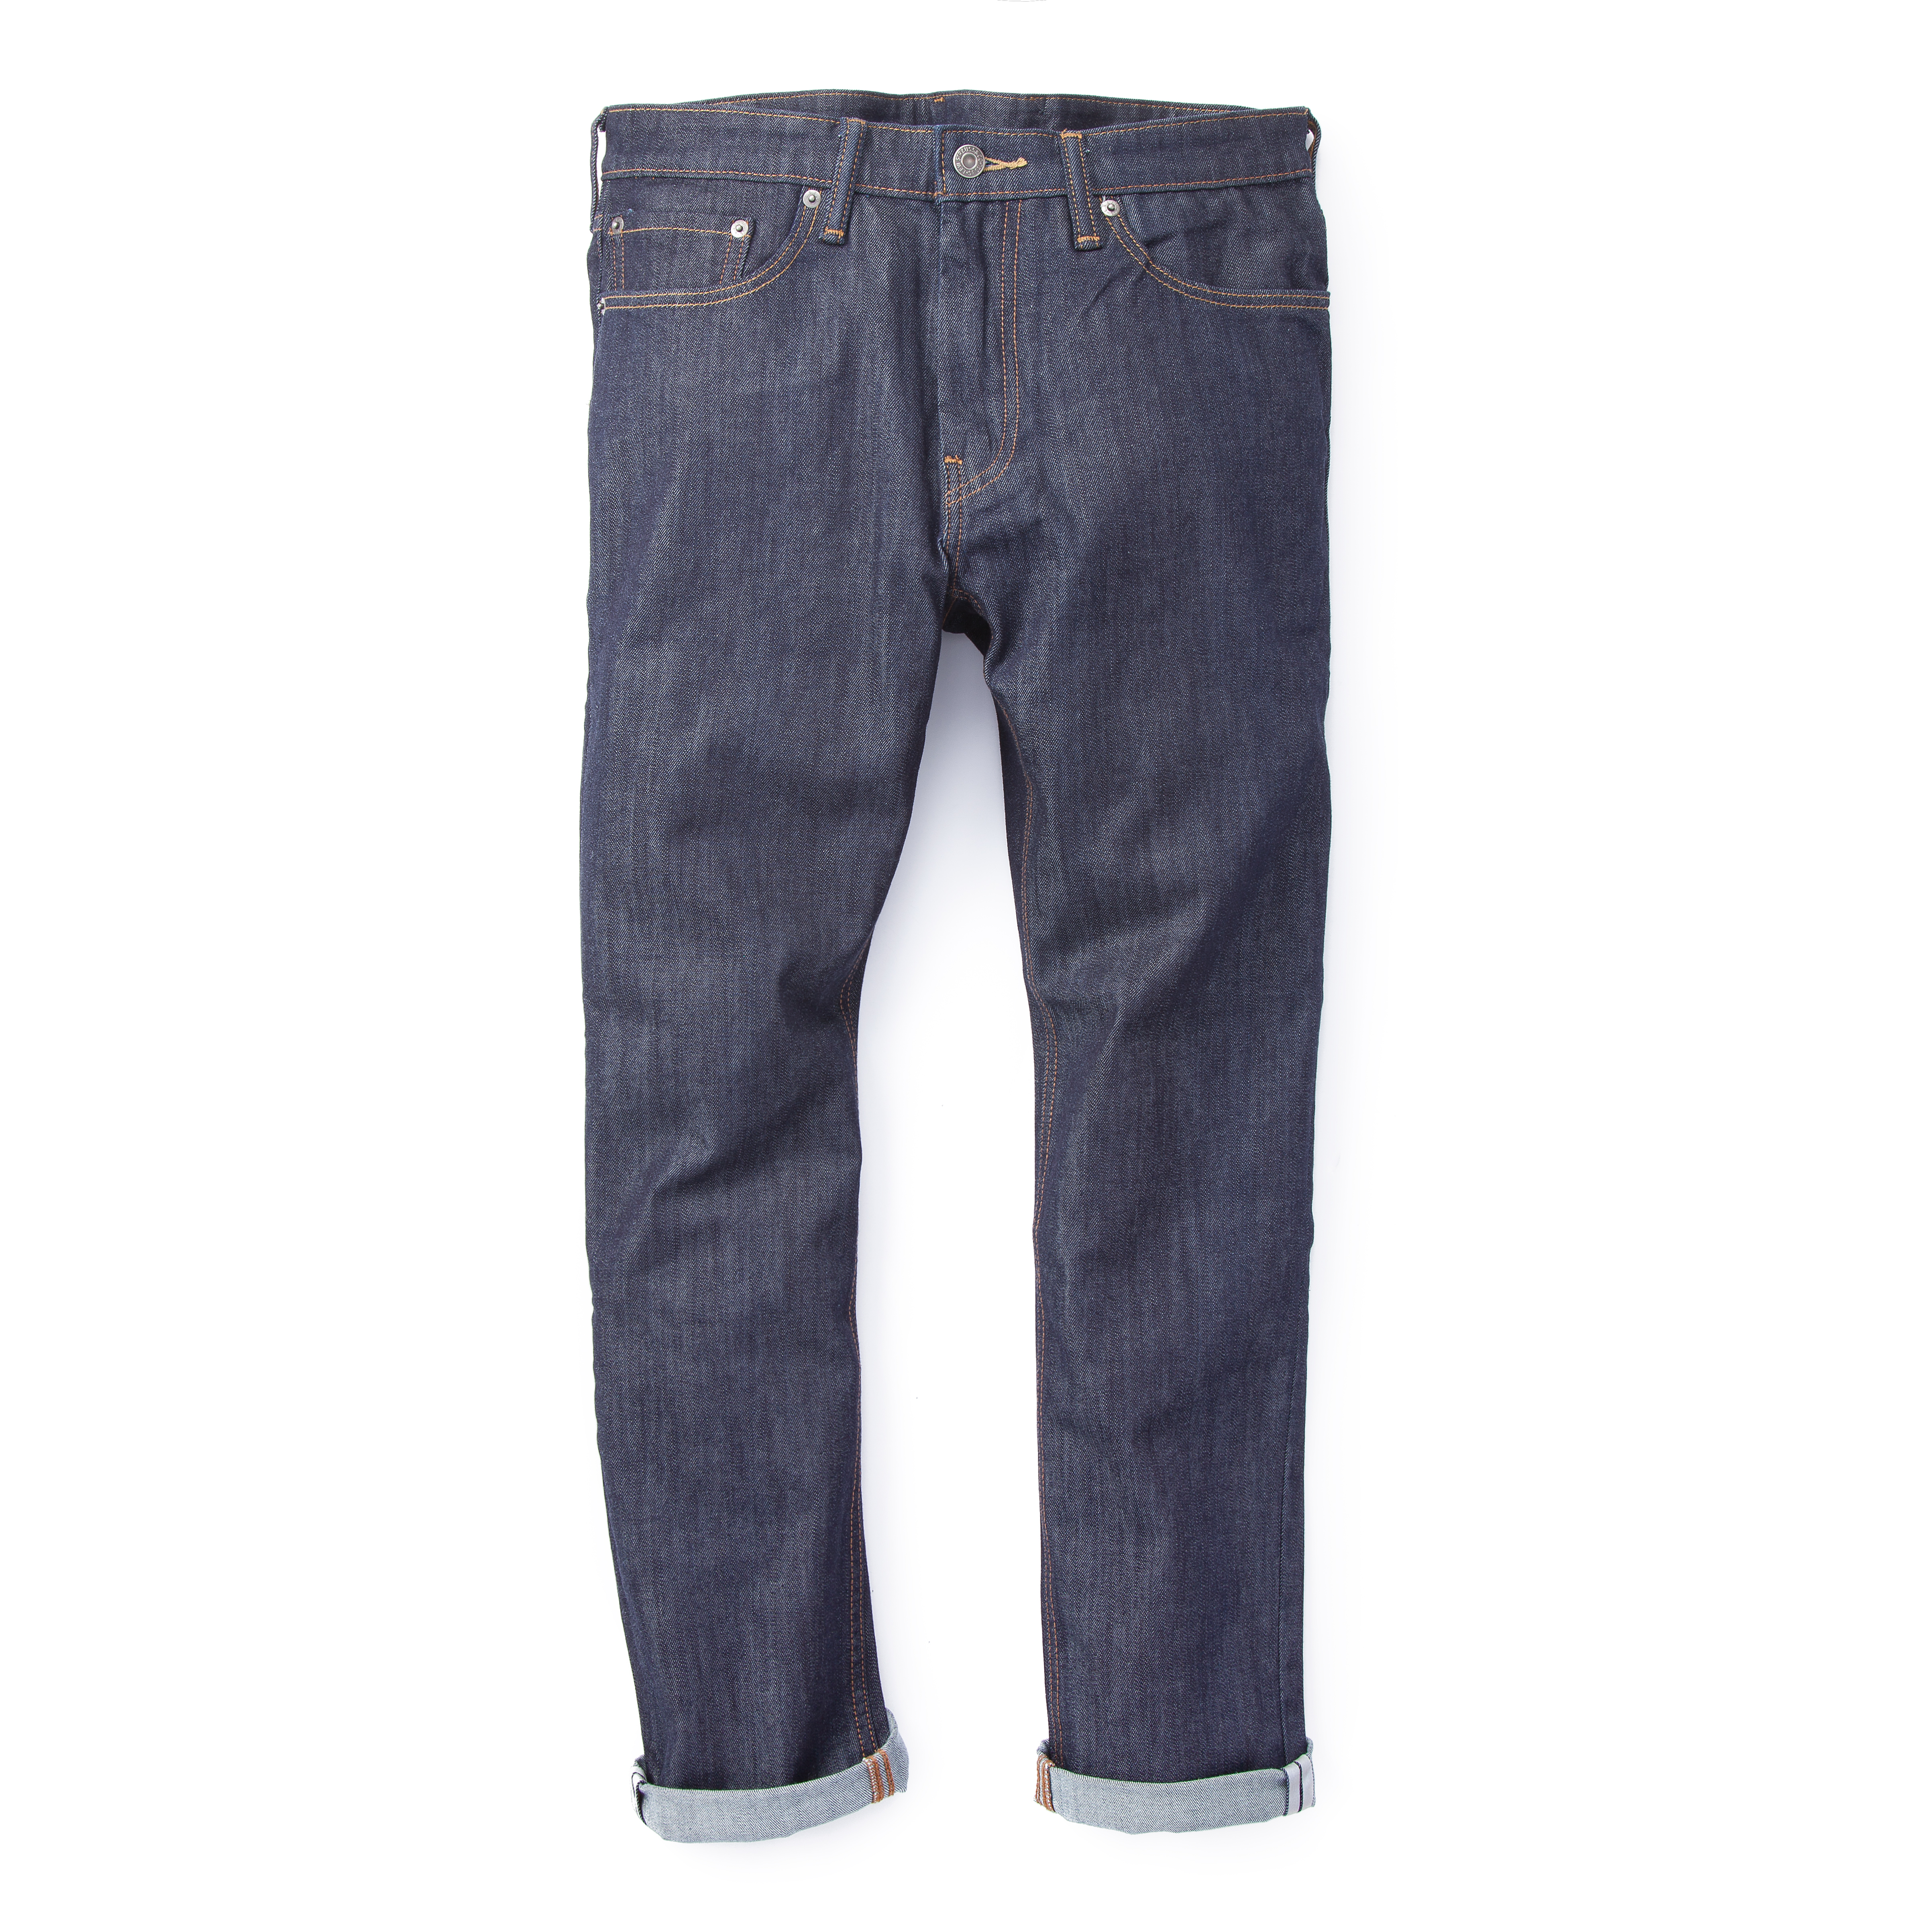 LEVIS Commuter Pro Cordura Dark Wash Slim Jeans | Slim jeans, Levi, Jeans